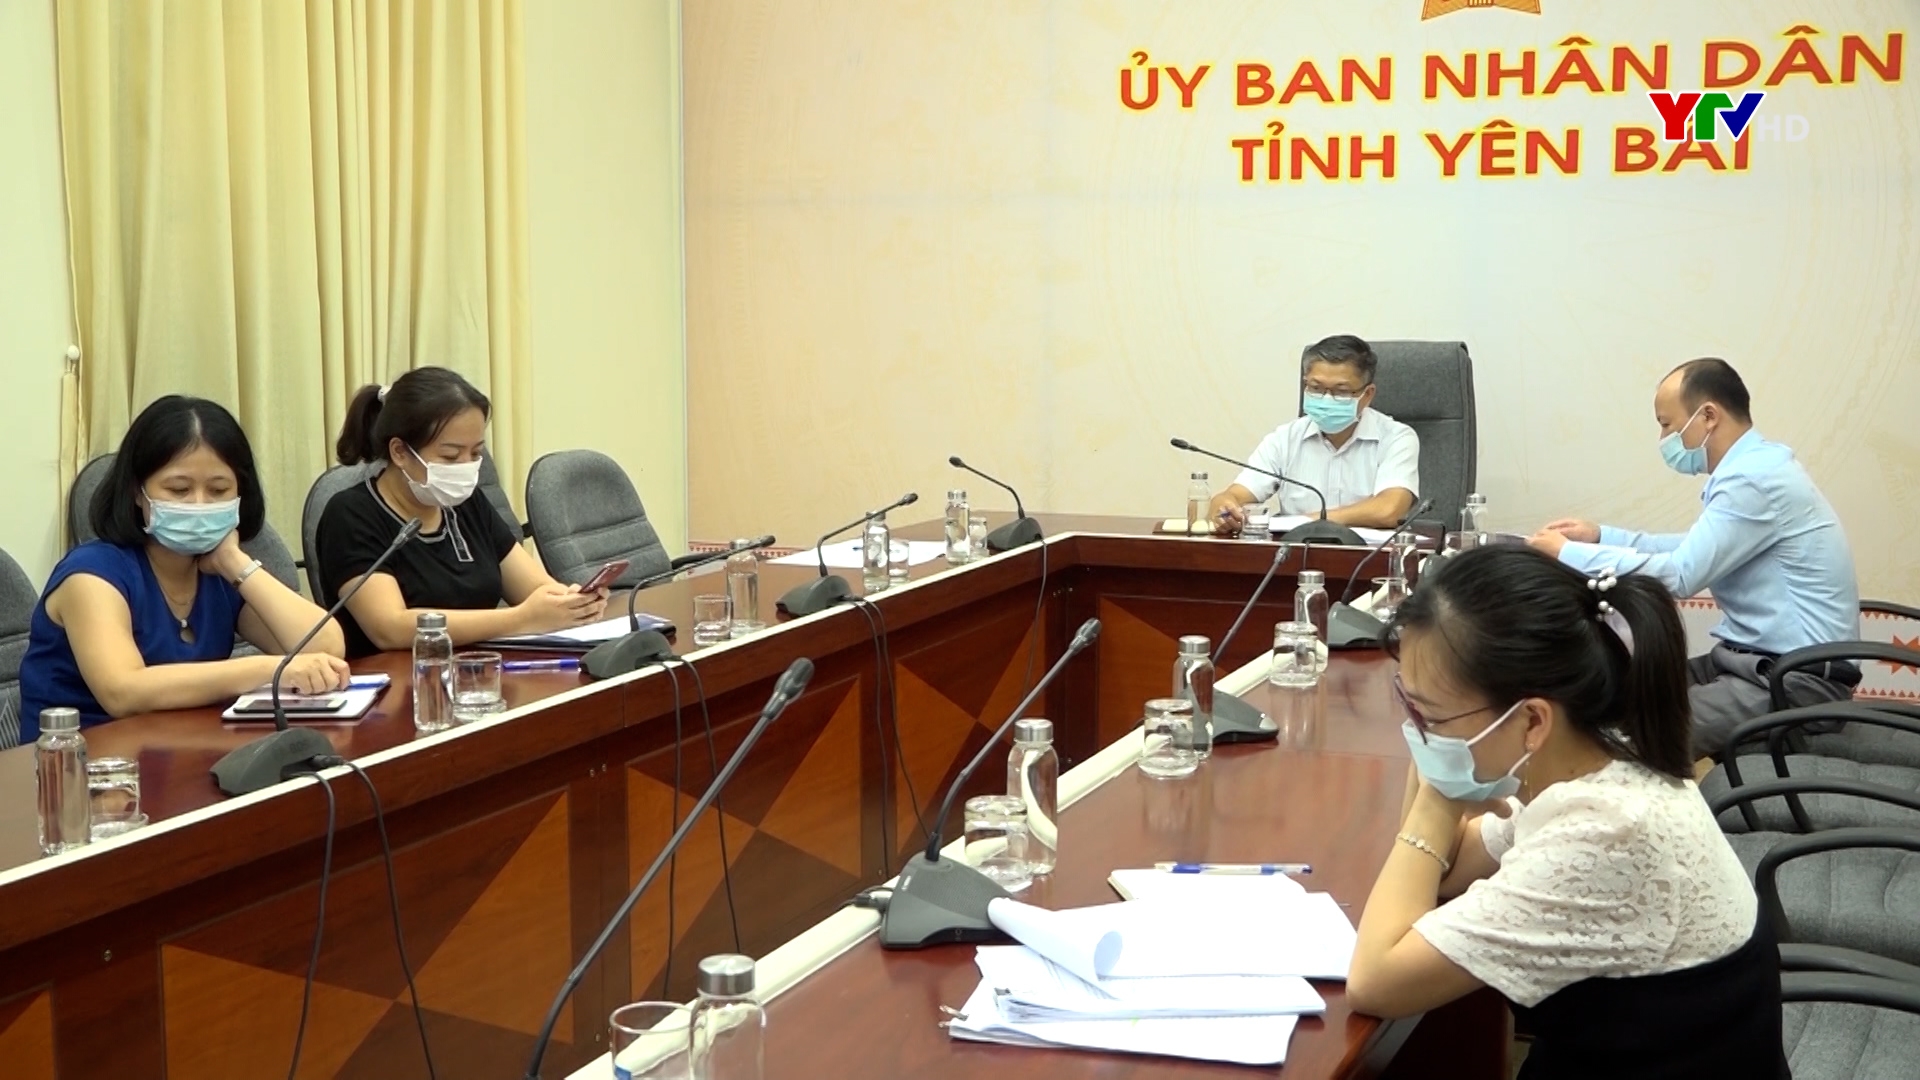 Yên Bái tham dự Hội thảo trực tuyến “Hợp tác nông nghiệp Việt Nam - Châu Phi"